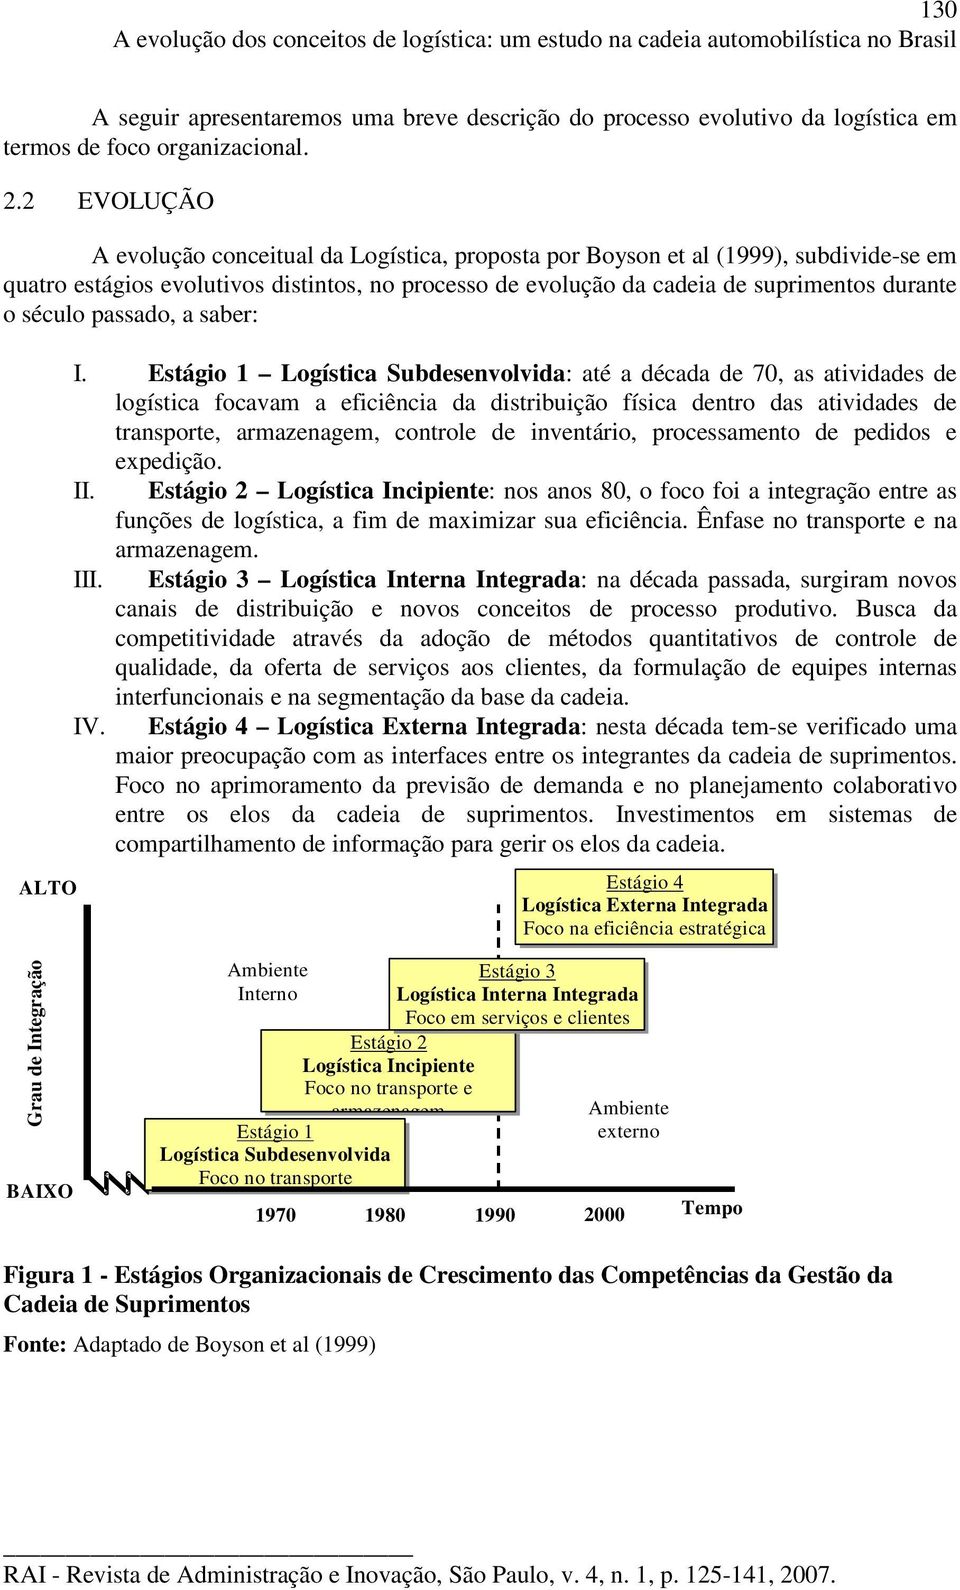 2 EVOLUÇÃO A evolução conceitual da Logística, proposta por Boyson et al (1999), subdivide-se em quatro estágios evolutivos distintos, no processo de evolução da cadeia de suprimentos durante o